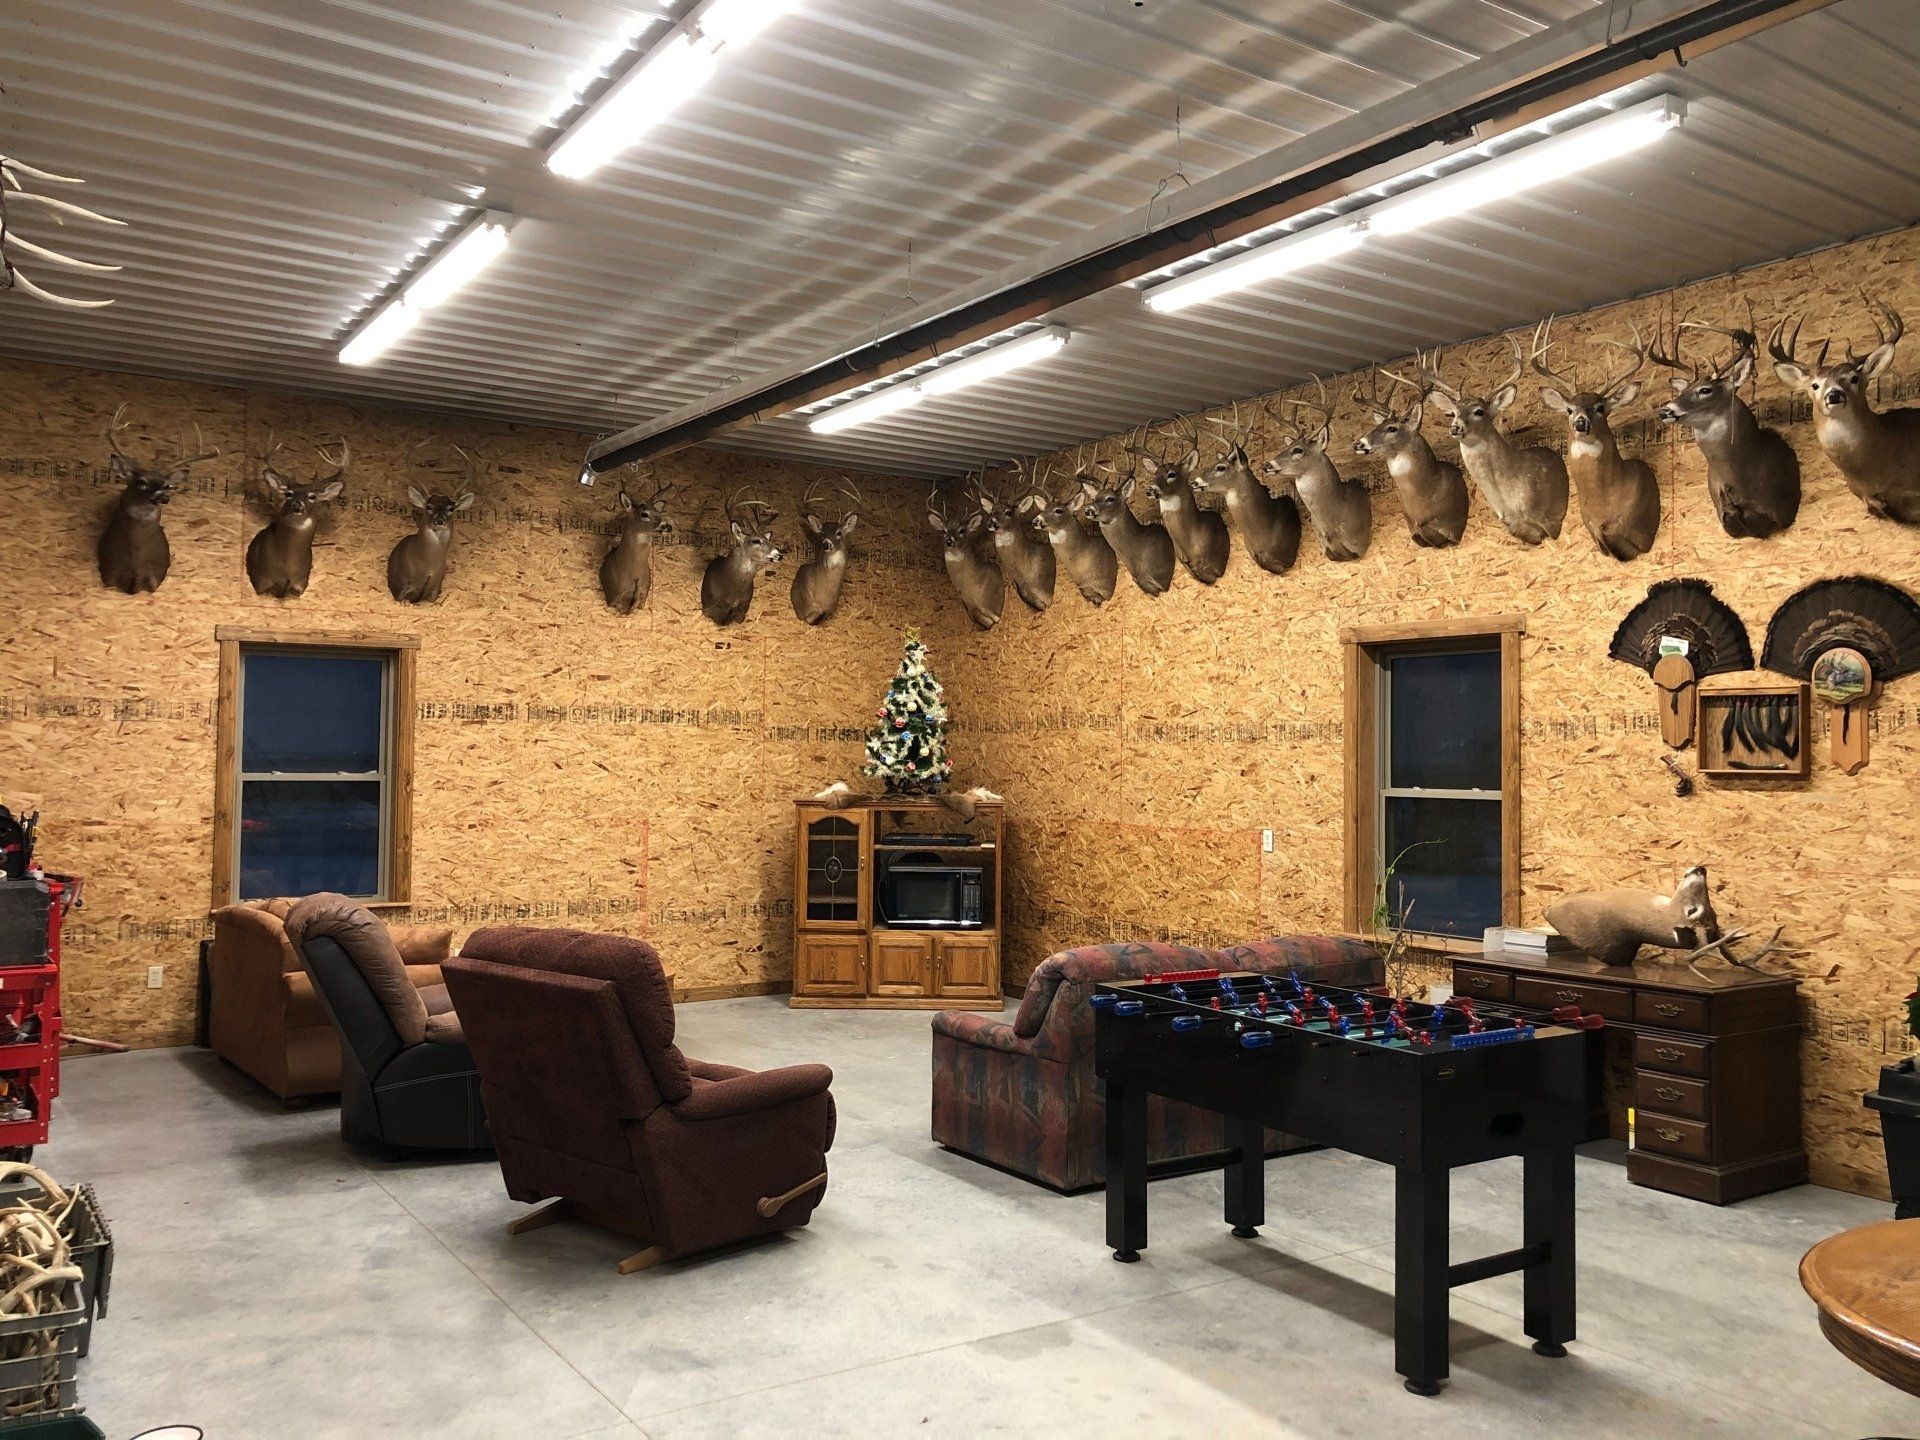 Kansas Whitetail Deer hunting lodge, Kansas whitetail deer hunting outfitter